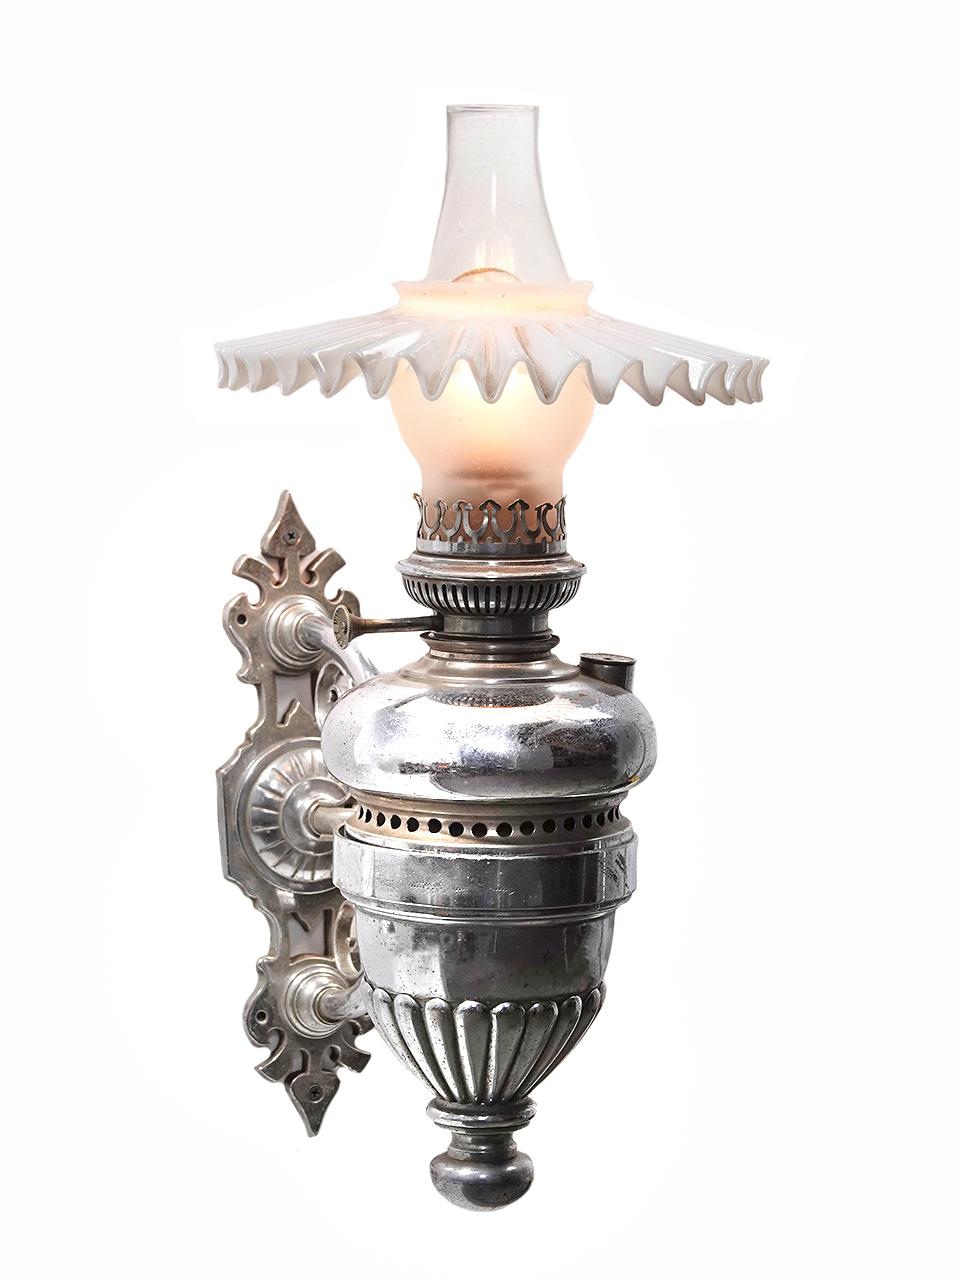 Cette lampe nickelée très ornée est signée et datée... Belgian Lamp Co. 1884. I+I a l'air d'une applique de voiture Pullman de chemin de fer, mais on ne peut pas en être sûr. Il s'agit sans doute de l'exemplaire le plus luxueux que nous ayons